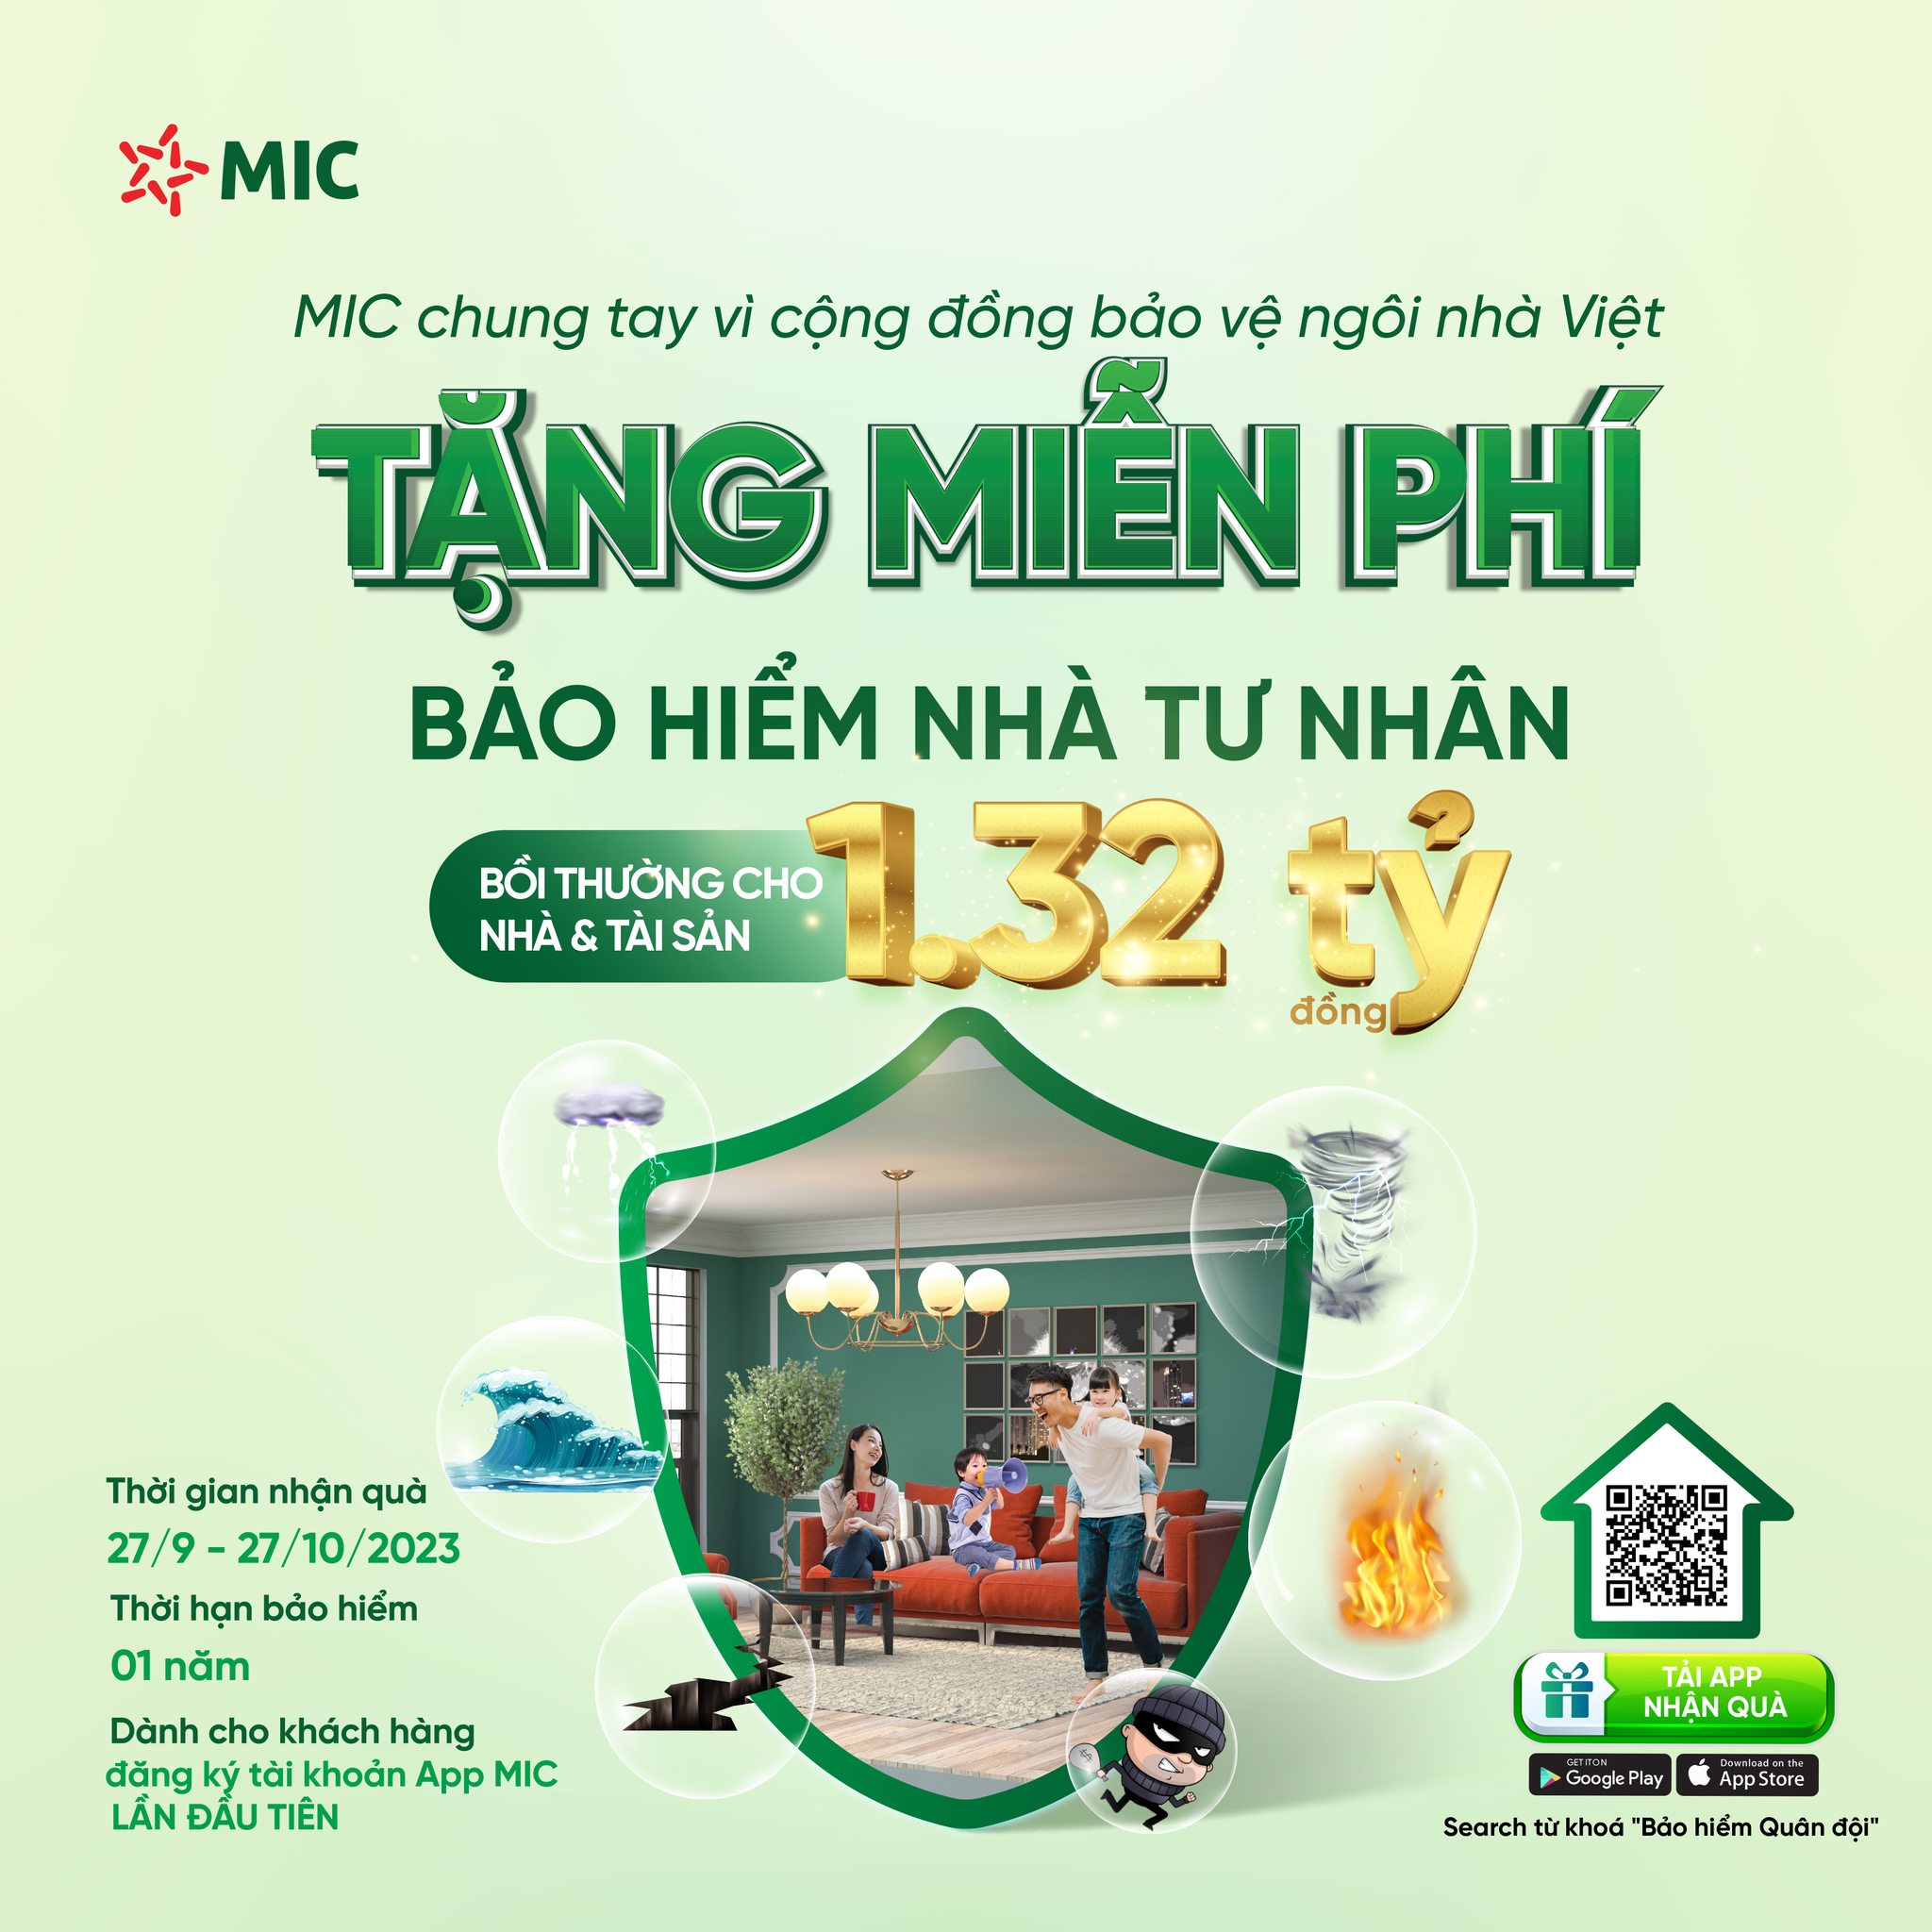 Bảo hiểm Quân đội triển khai chiến dịch tặng miễn phí bảo hiểm Nhà chung tay vì cộng đồng “bảo vệ ngôi nhà Việt” quyền lợi đến 1,32 tỷ đồng